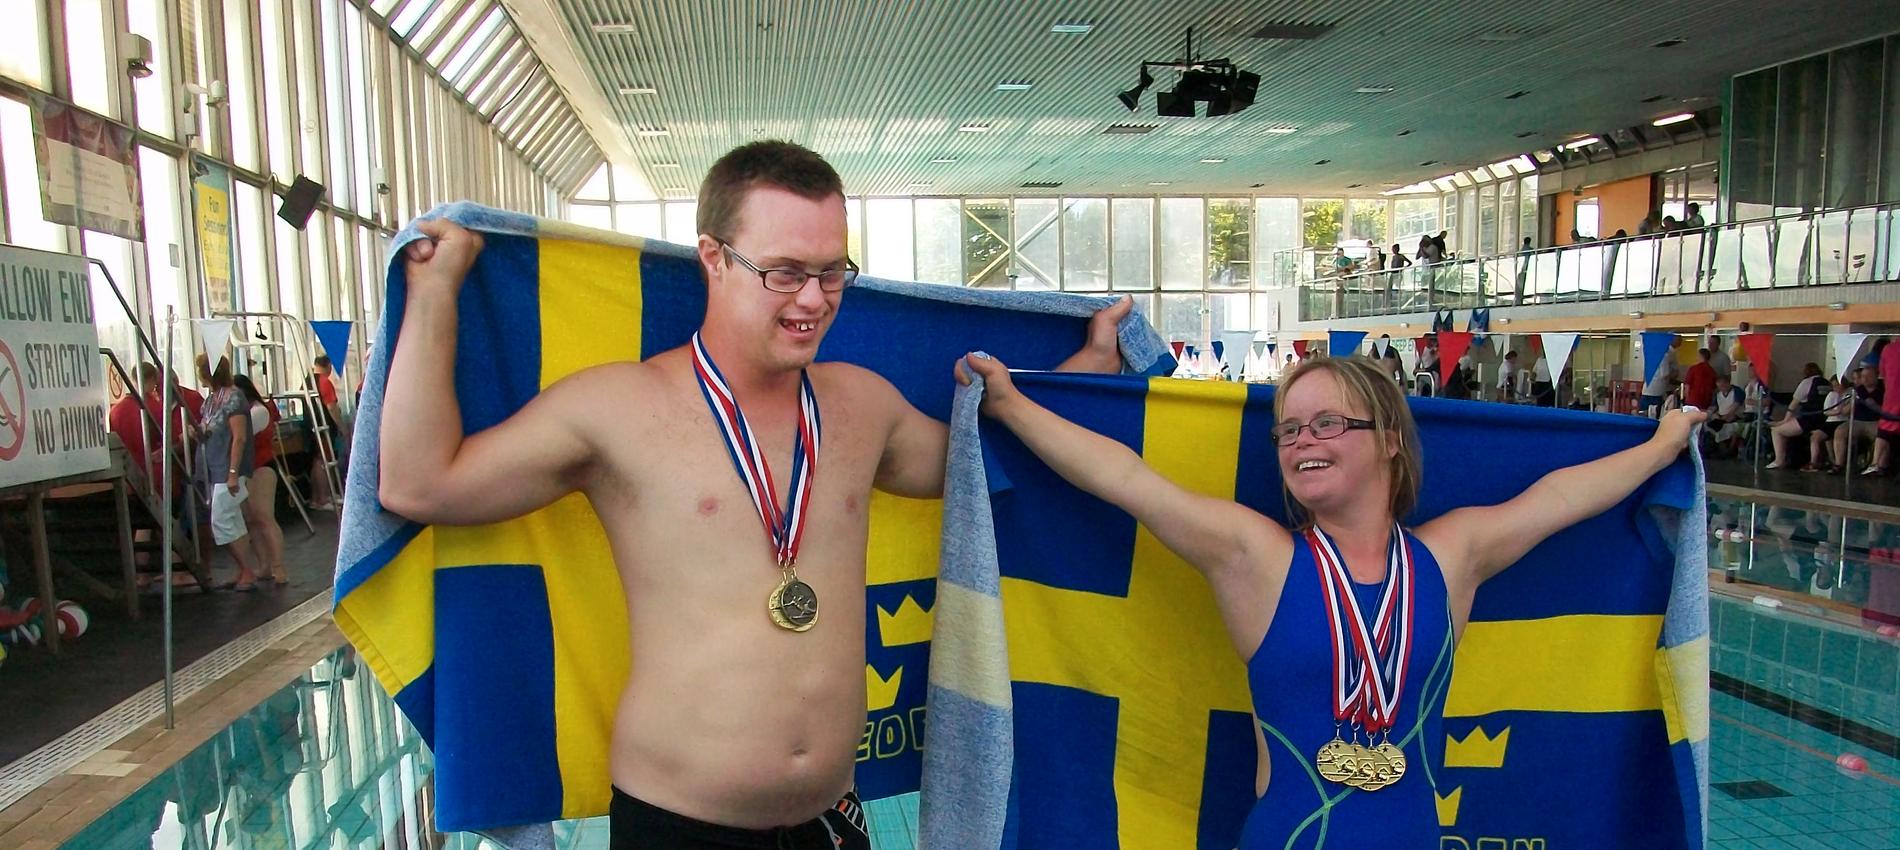 När det var VM i Mexiko för simmare med downs syndrom så satte hon världsrekord på 25 meter bröstsim och fixade även fyra europarekord.